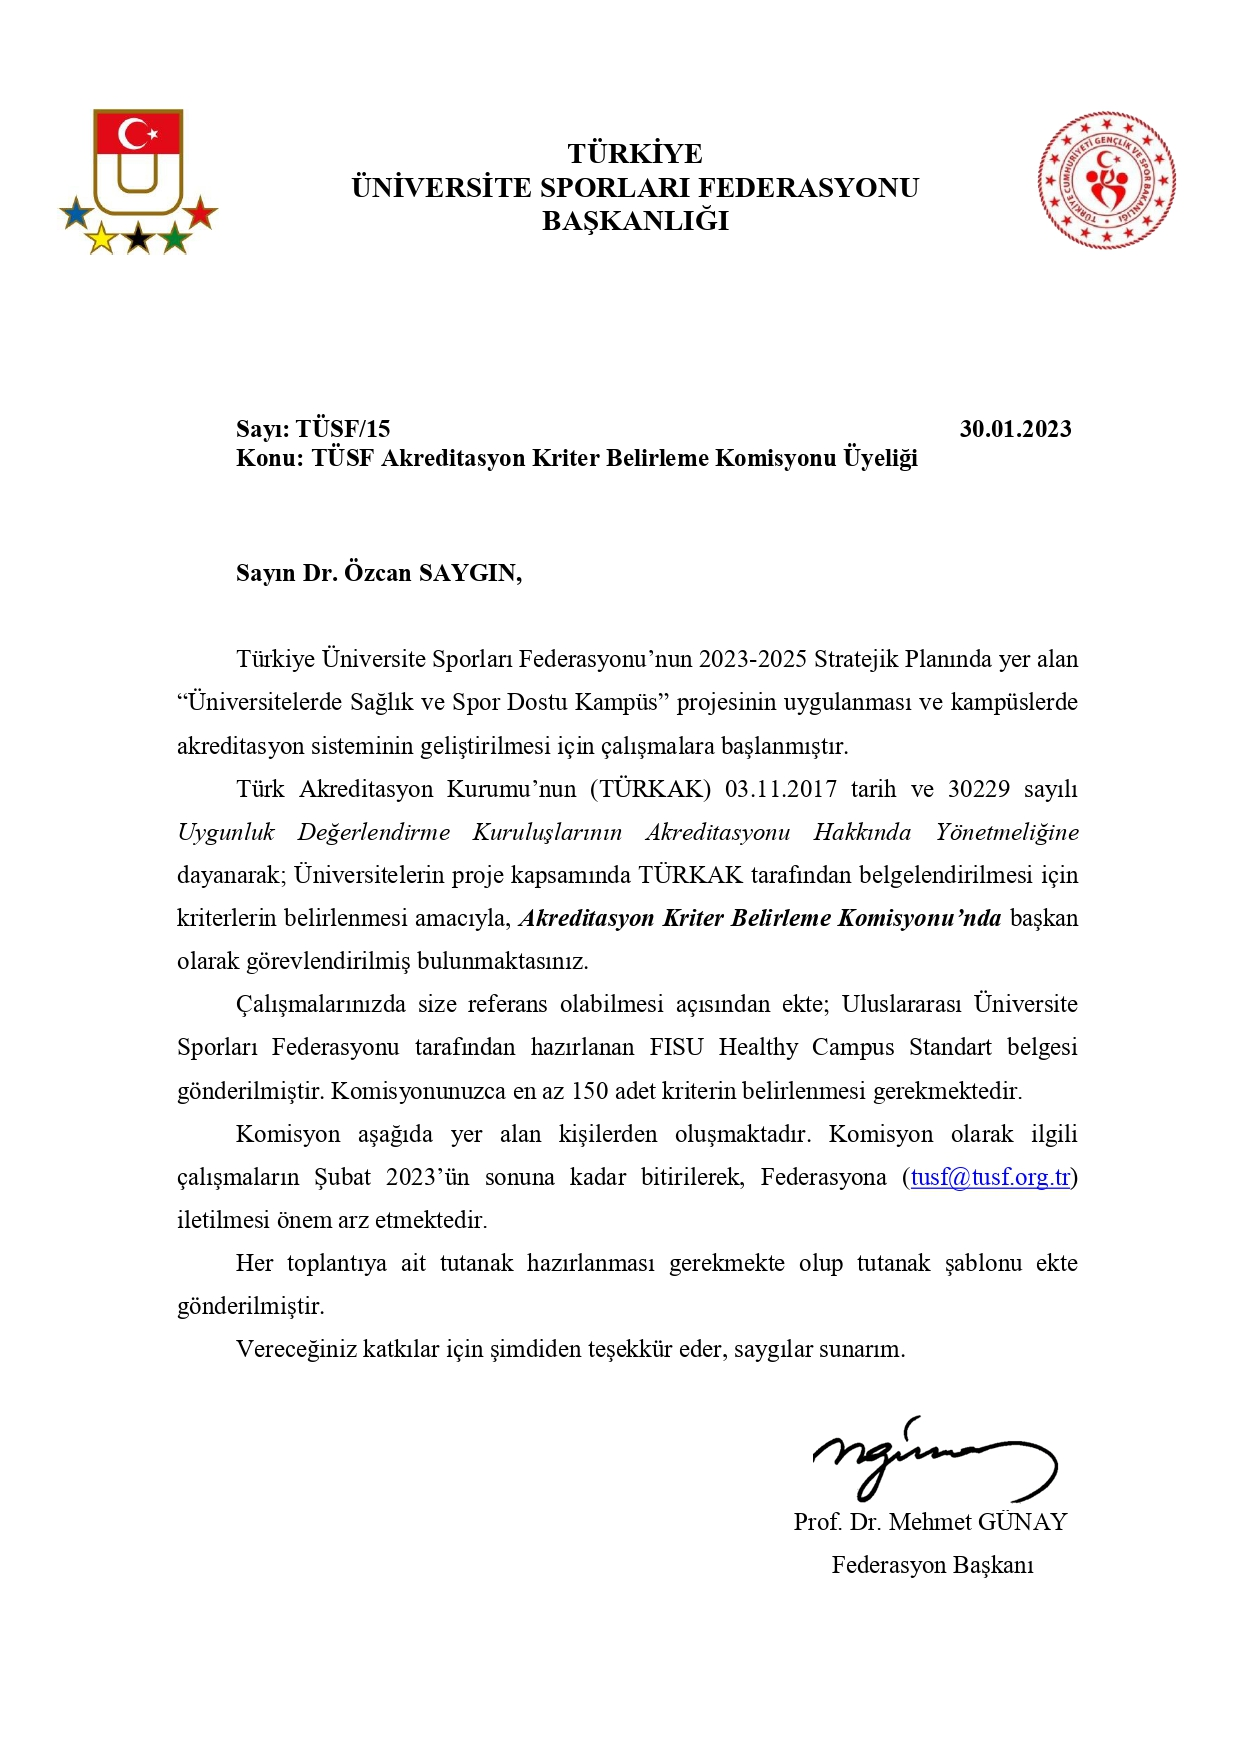 TÜSF Akreditasyon Kriter Belirleme Komisyonu Başkanı Prof. Dr. Özcan Saygın Oldu